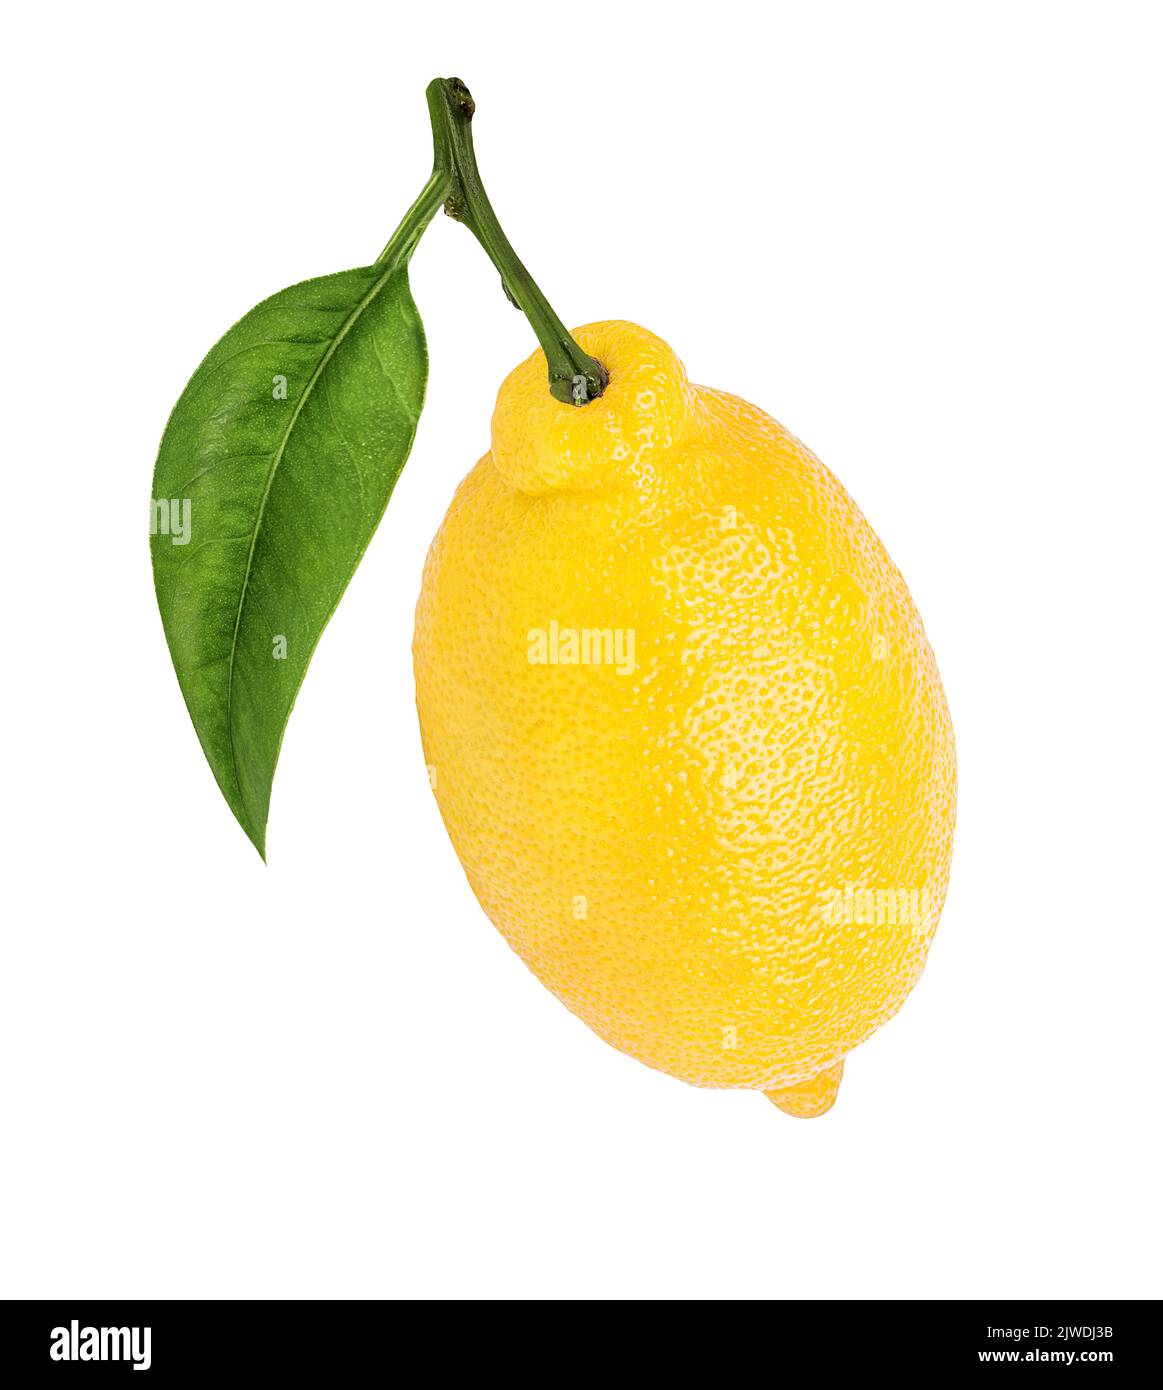 Fresh lemon isolated on white background Stock Photo